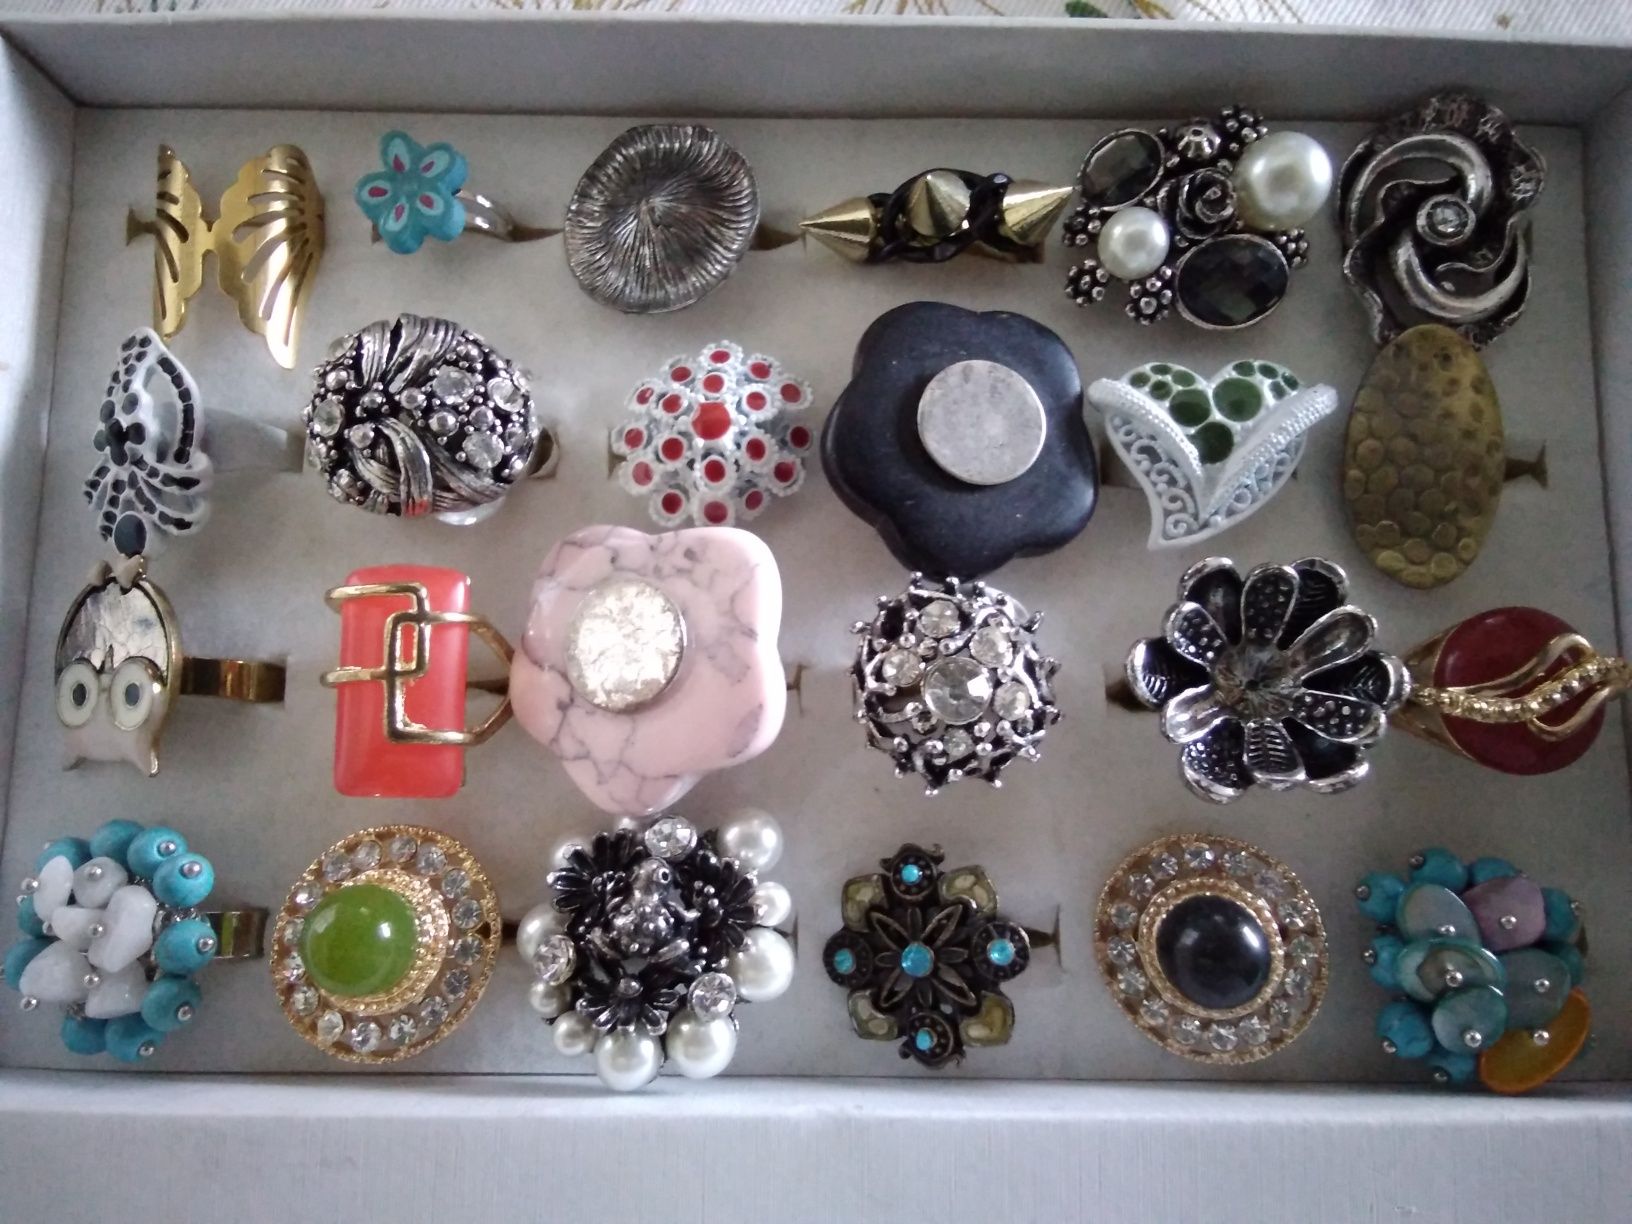 Bijuteria - brincos,anéis, pulseiras e fios - preços de revenda